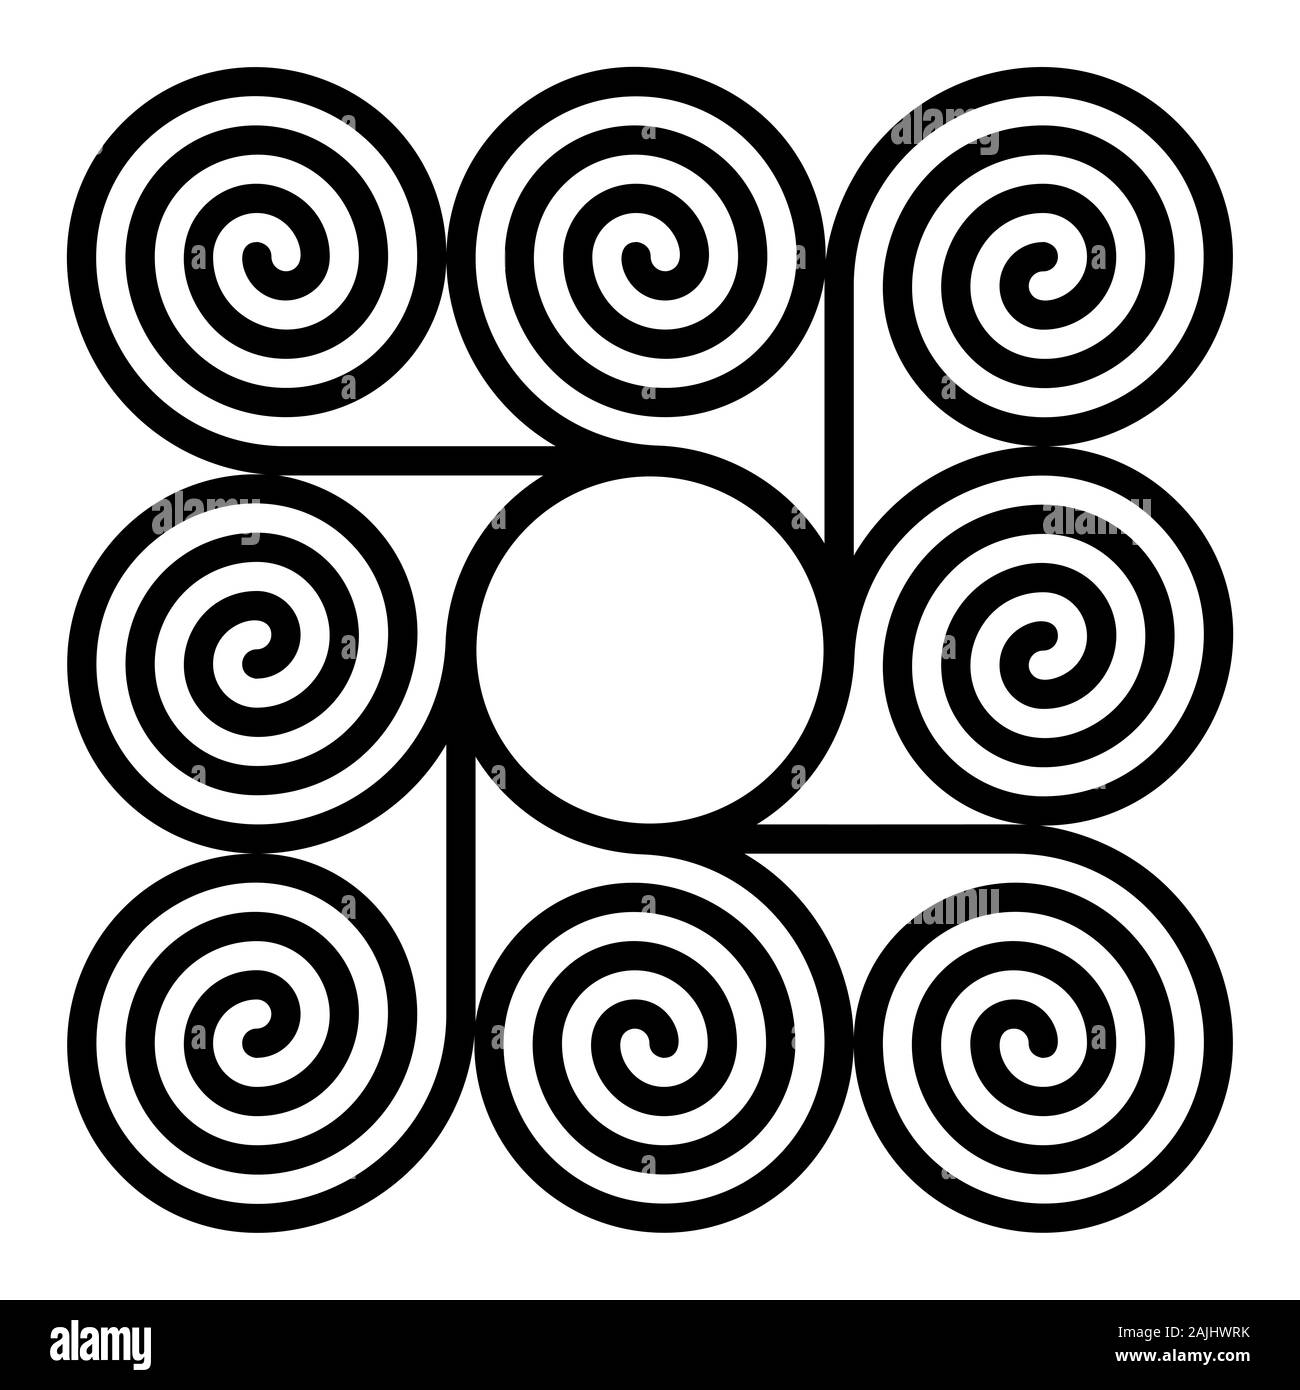 Acht arithmetische Spiralen um einen Kreis bilden ein quadratisches Muster. Archimedische Spiralen der gleichen Zeitabständen mit einem Kreis in der Mitte verbunden sind. Stockfoto